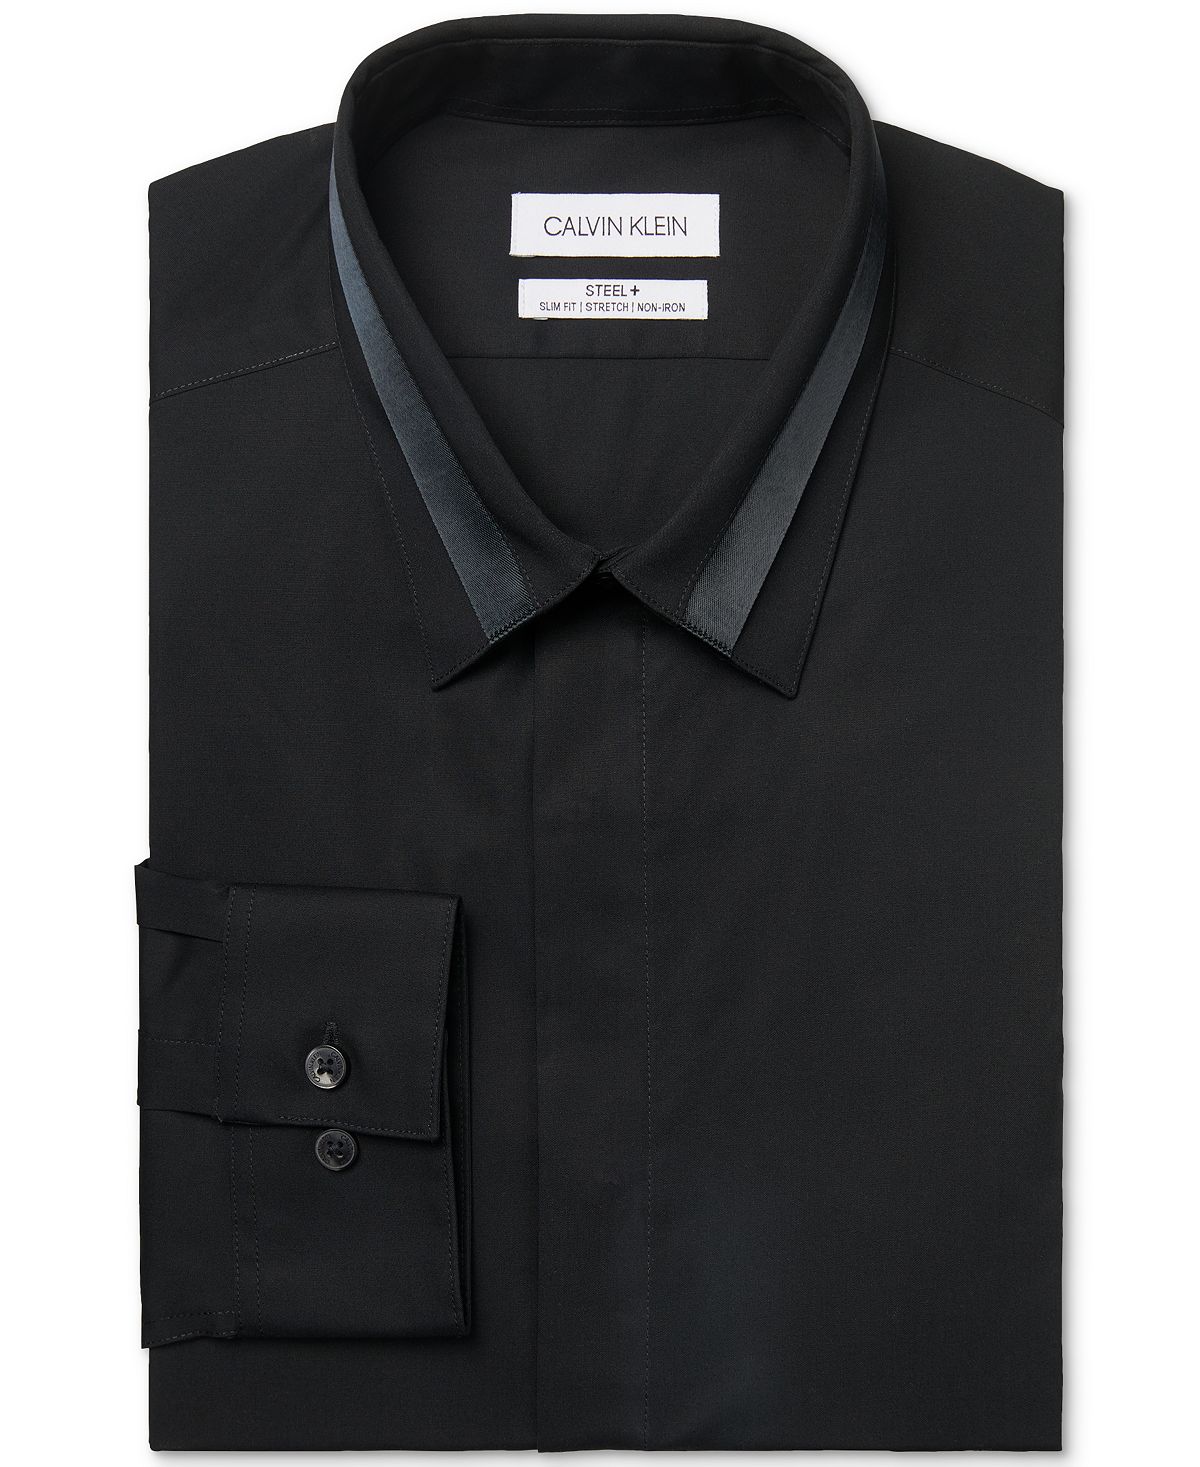 Calvin Klein Steel Slim-fit Non-iron Performance Stretch Pieced Collar Dress Shirt Black